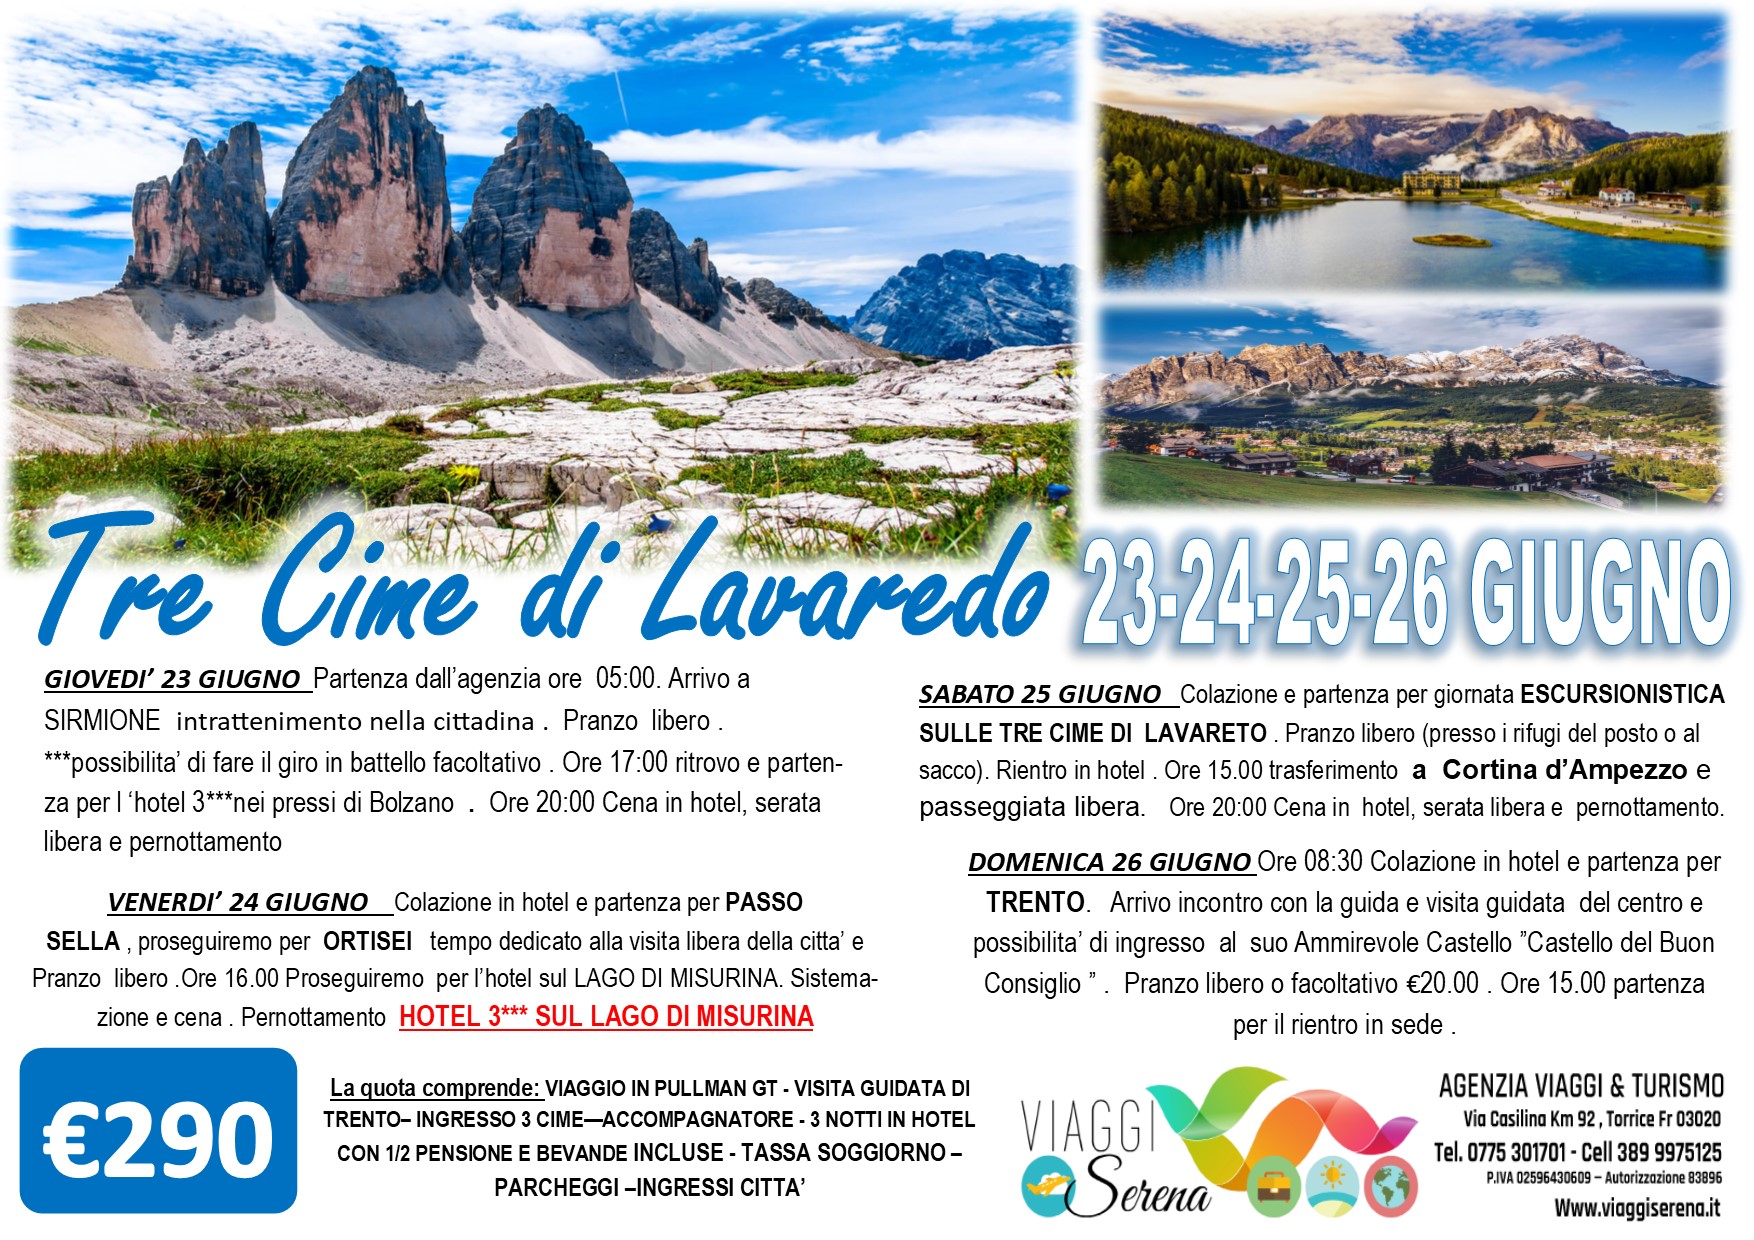 Viaggi di Gruppo: Tre Cime di LAVAREDO, Passo Sella, Cortina d’Ampezzo & Ortisei 23-24-25-26 Giugno € 290,00